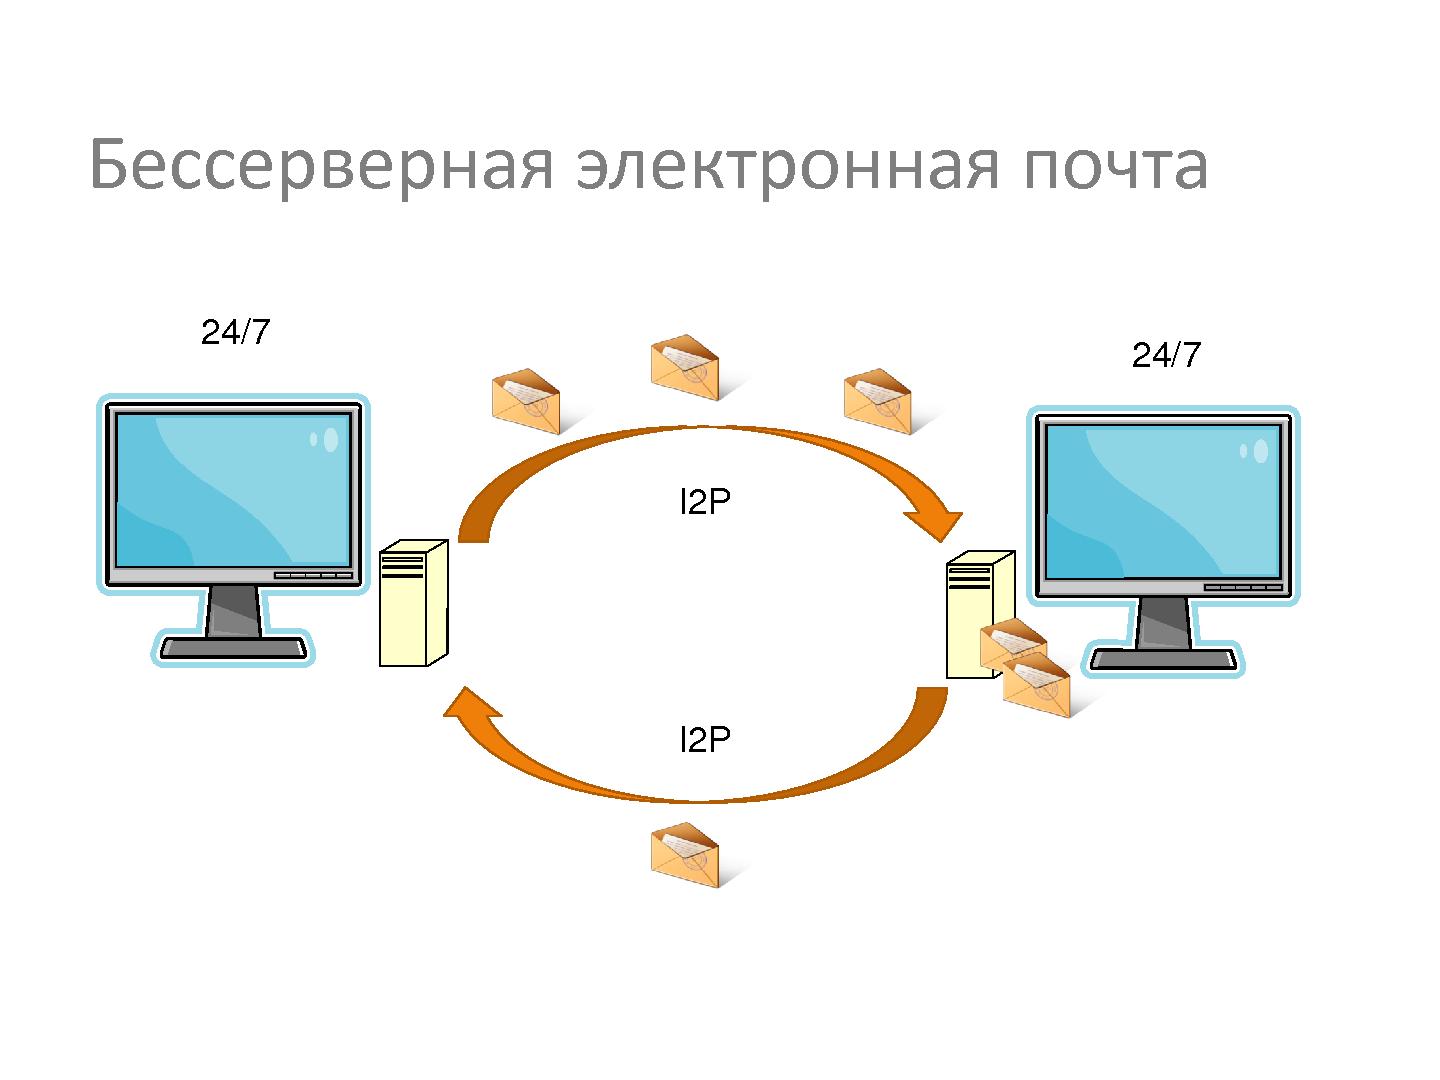 Файл:Система видеосвязи для невидимого интернета (Андрей Бодренко, SECR-2013).pdf